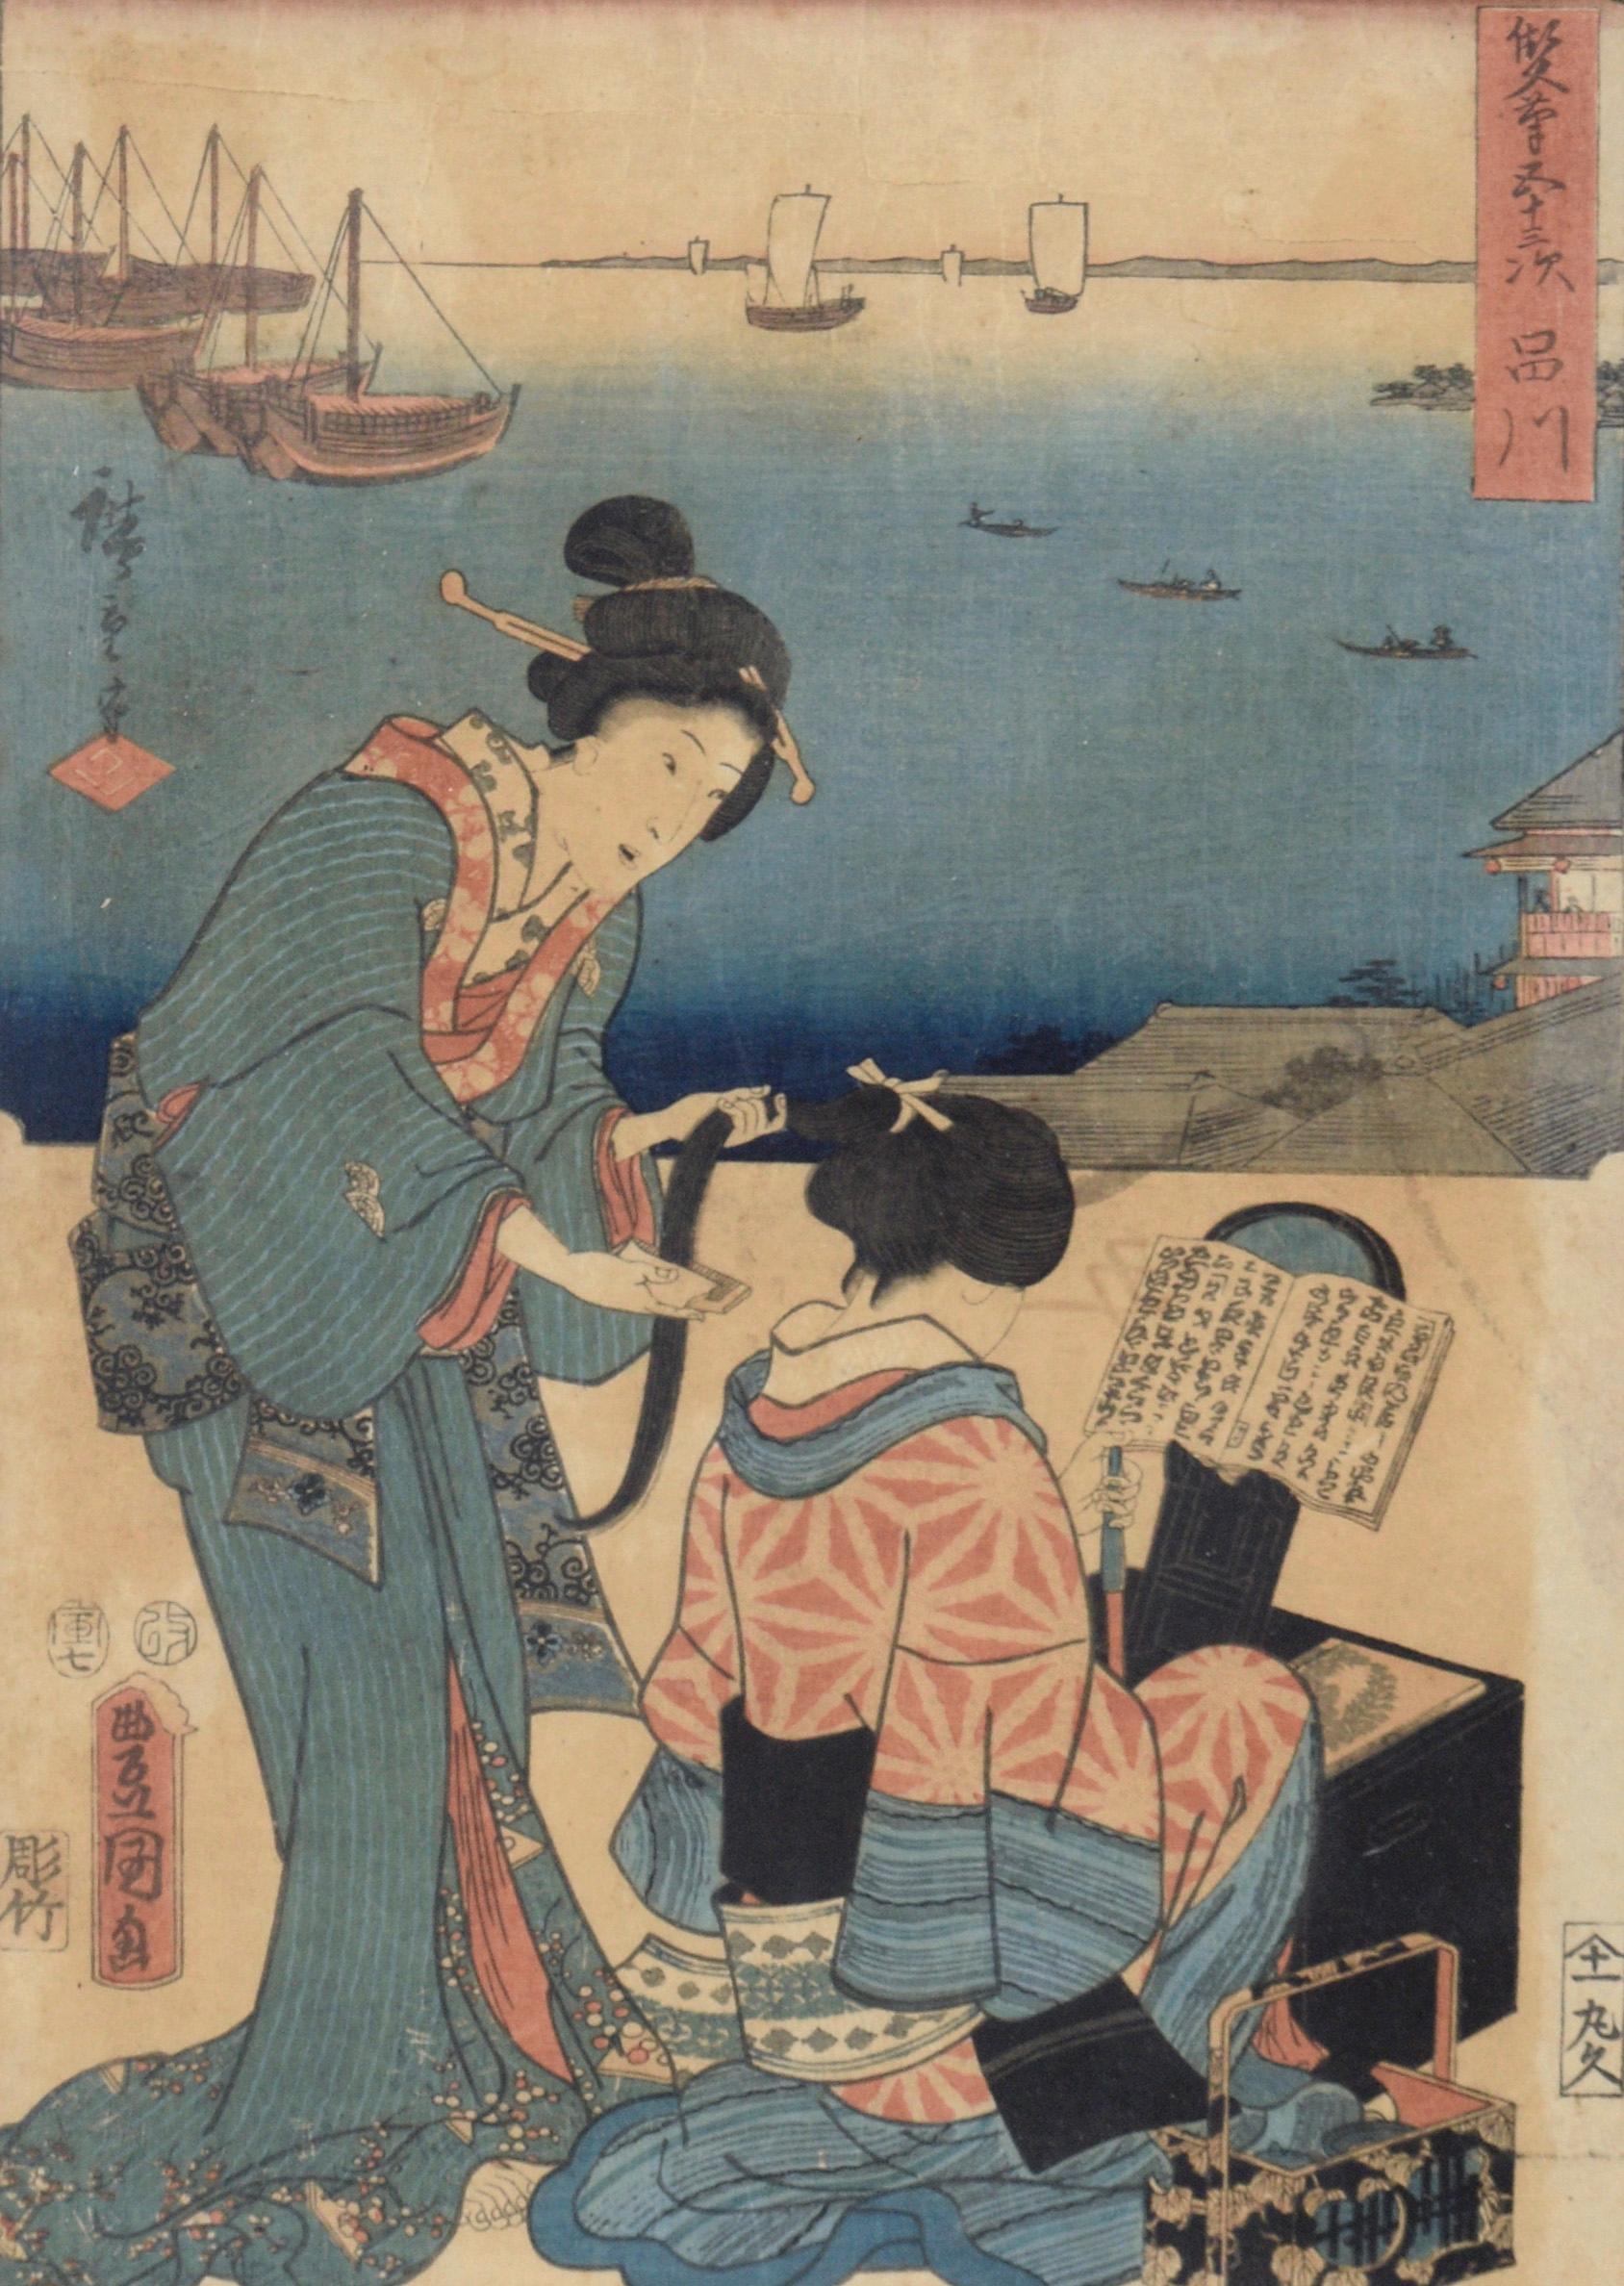 Coiffeuse 53 Stations of Tokaido - Woodblock Utagawa Hiroshige et Kunisada - Print de Utagawa Kunisada (Toyokuni III)